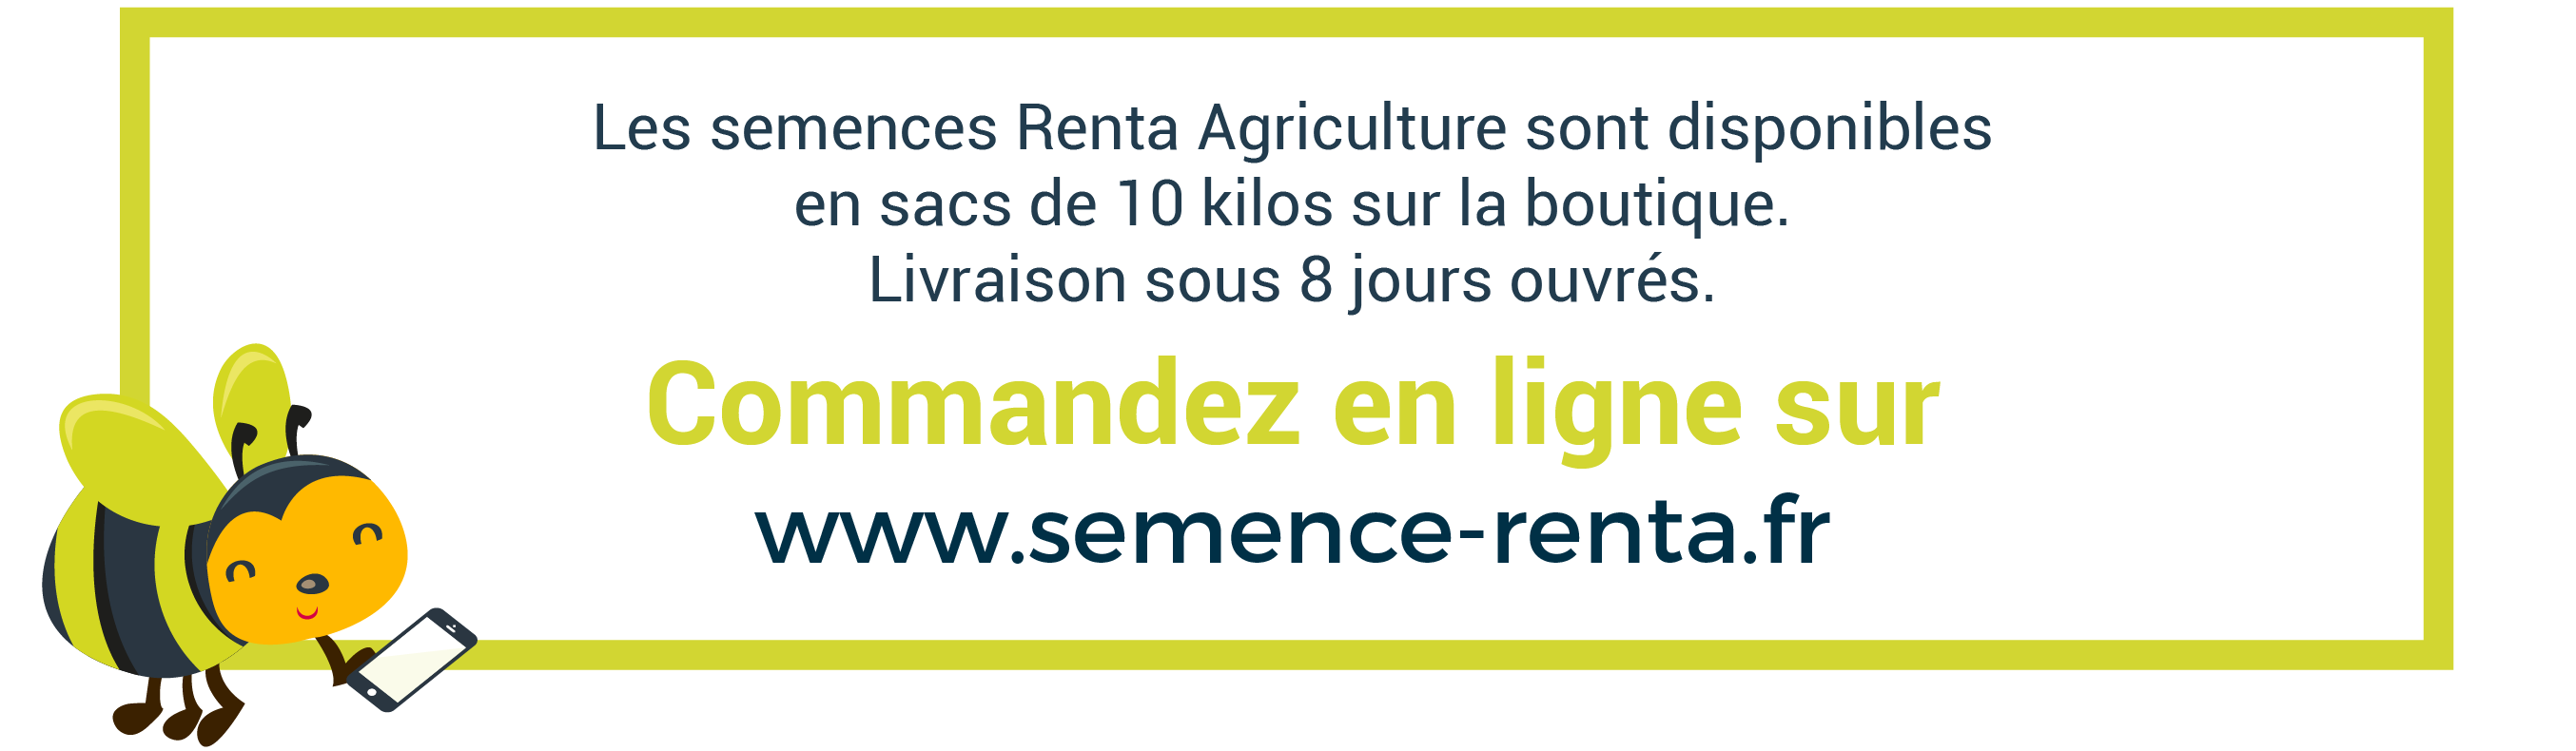 Les semences Renta Agriculture sont disponibles en sacs de 10 kilos sur la boutique. Livraison sous 8 jours ouvrés. Commandez en ligne sur www.semence-renta.fr 